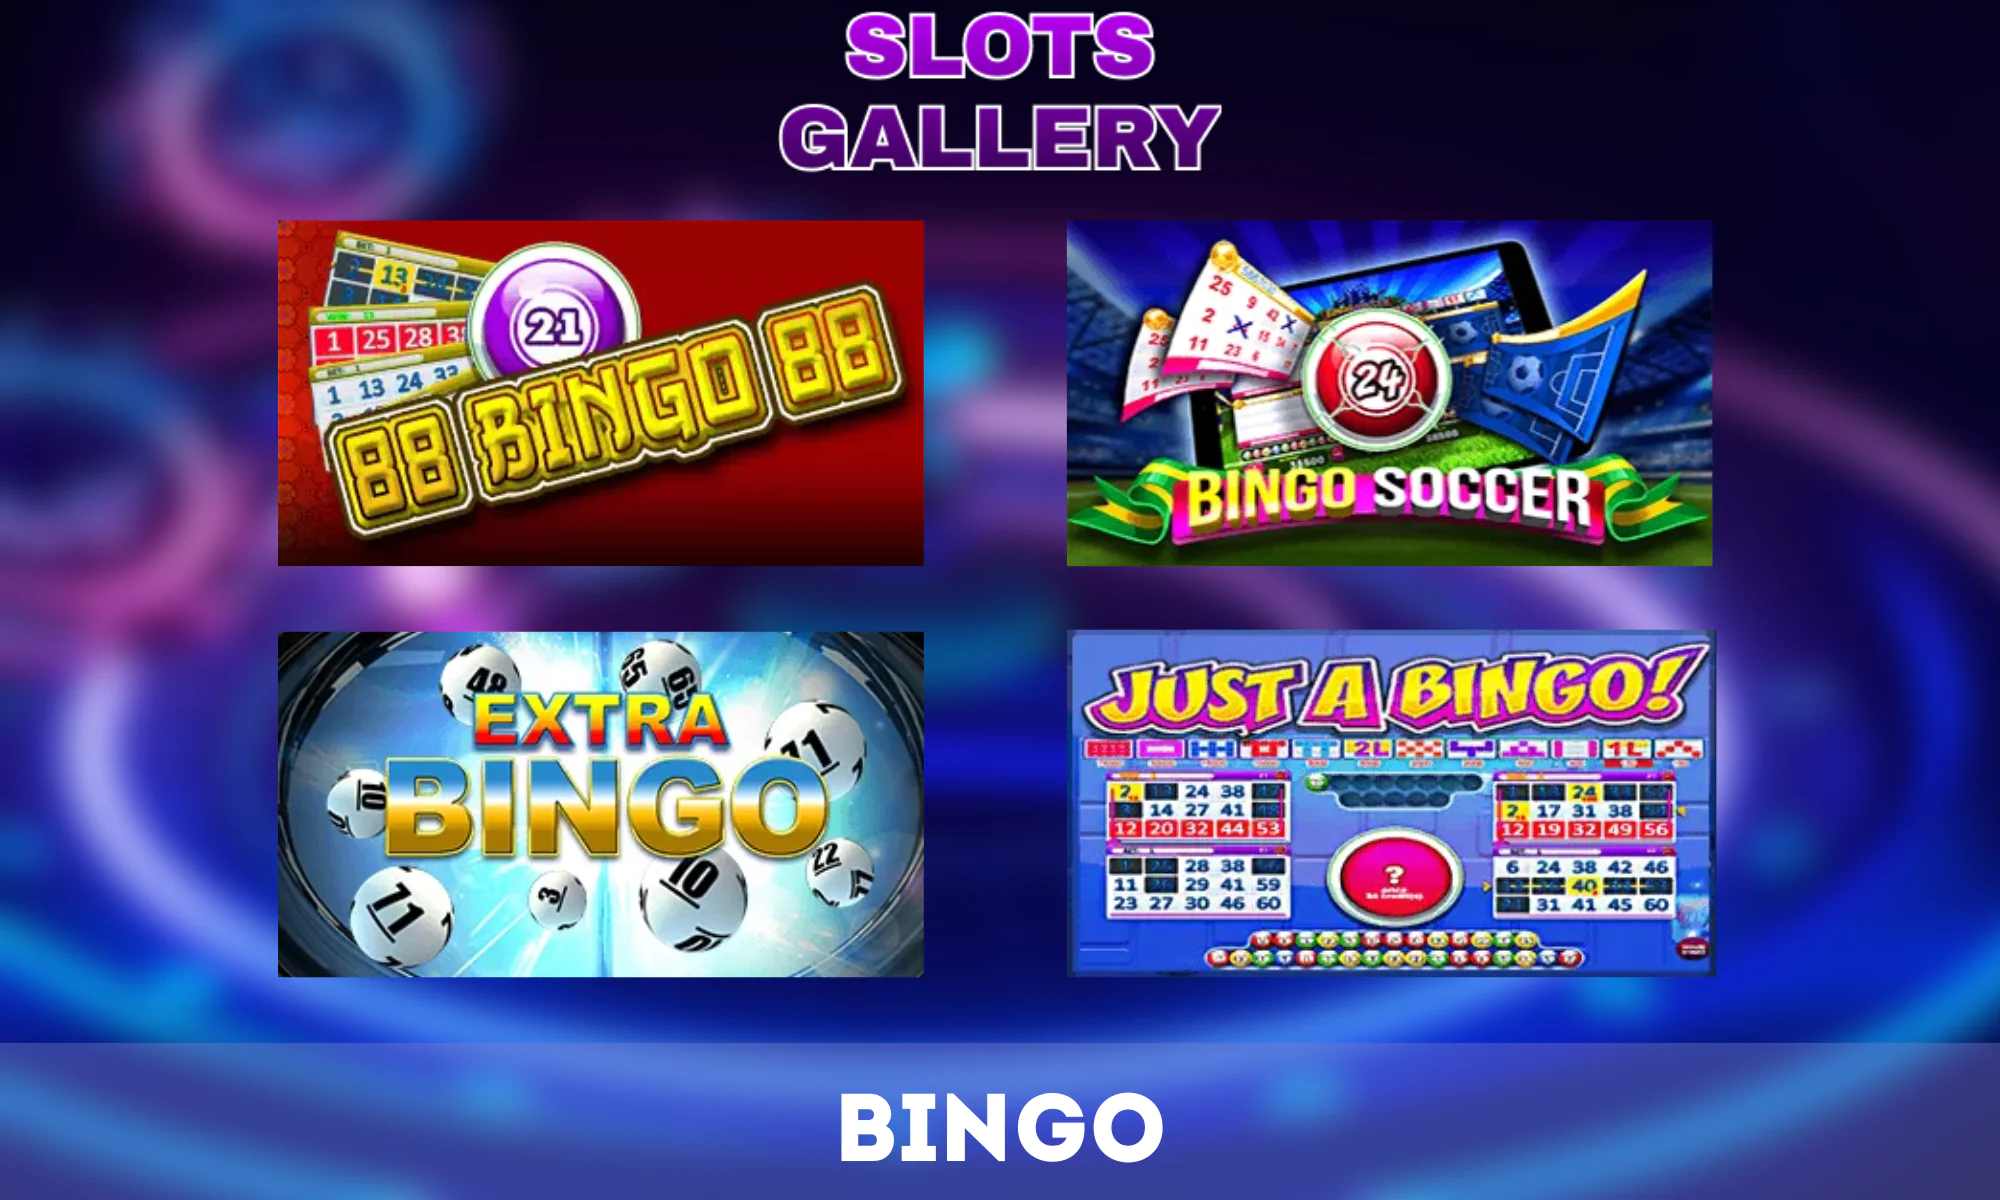 La Galerie des machines à sous propose une variété de jeux de bingo